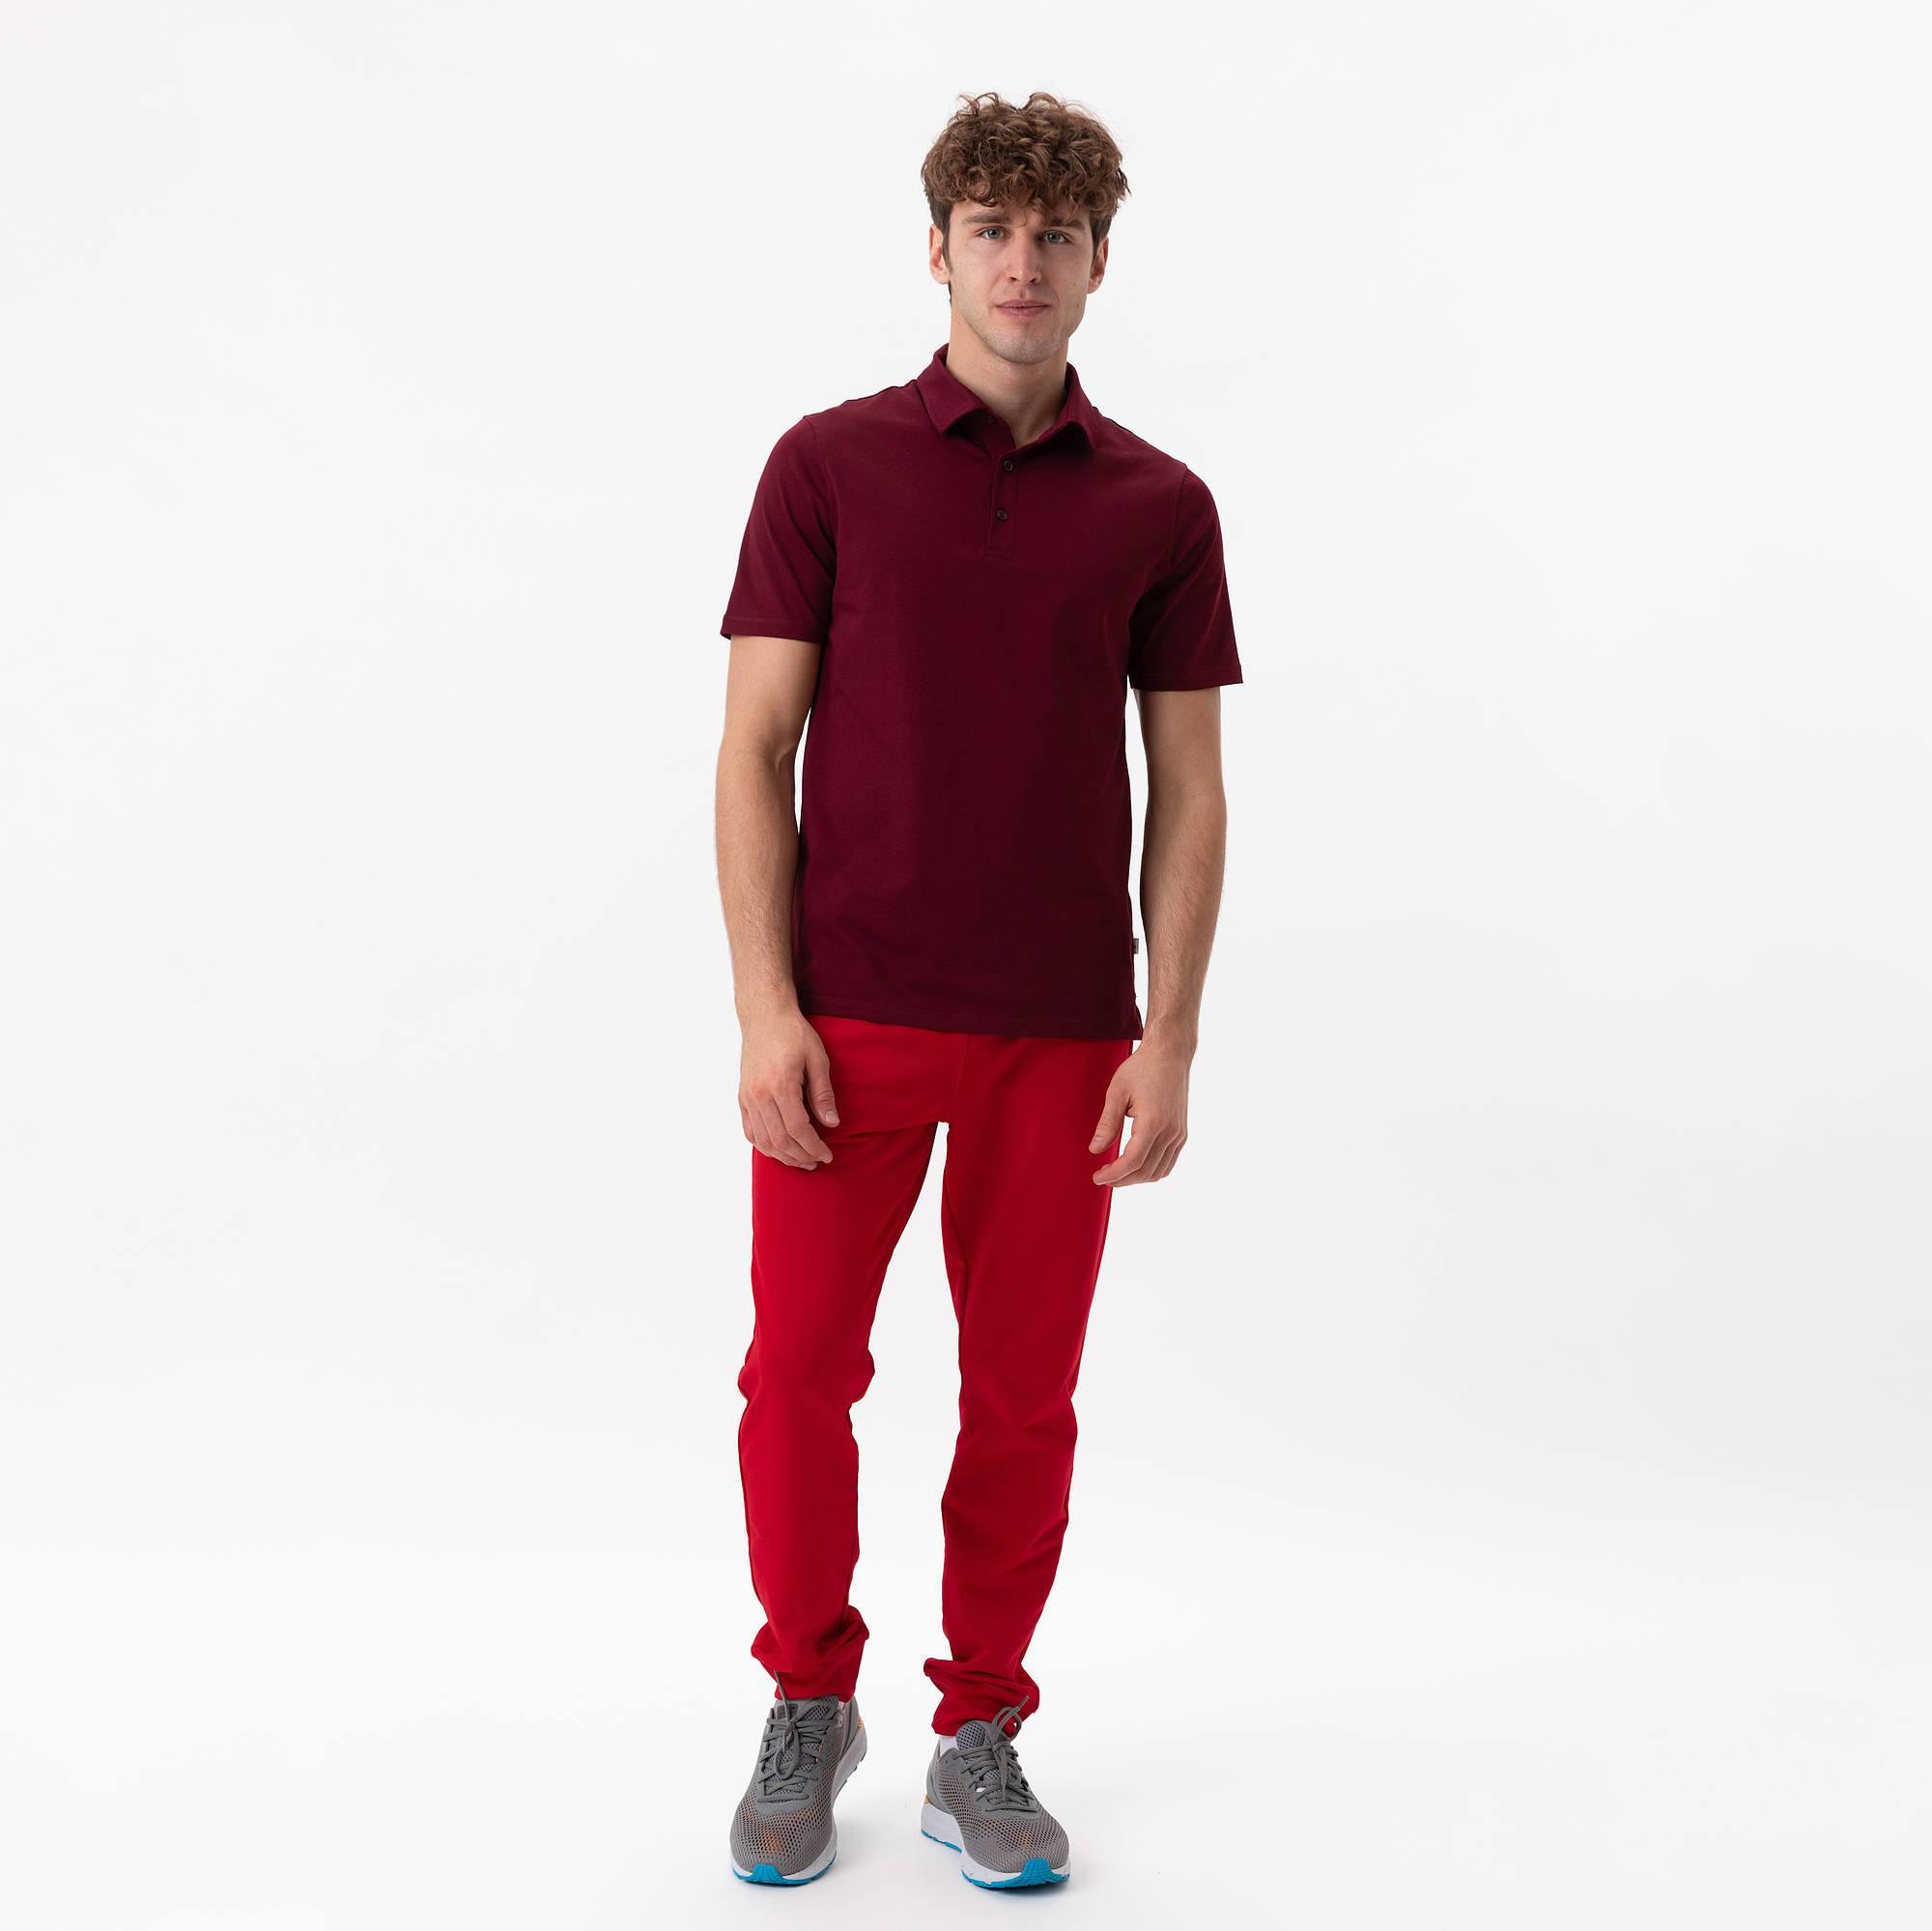 Czerwone spodnie dresowe męskie